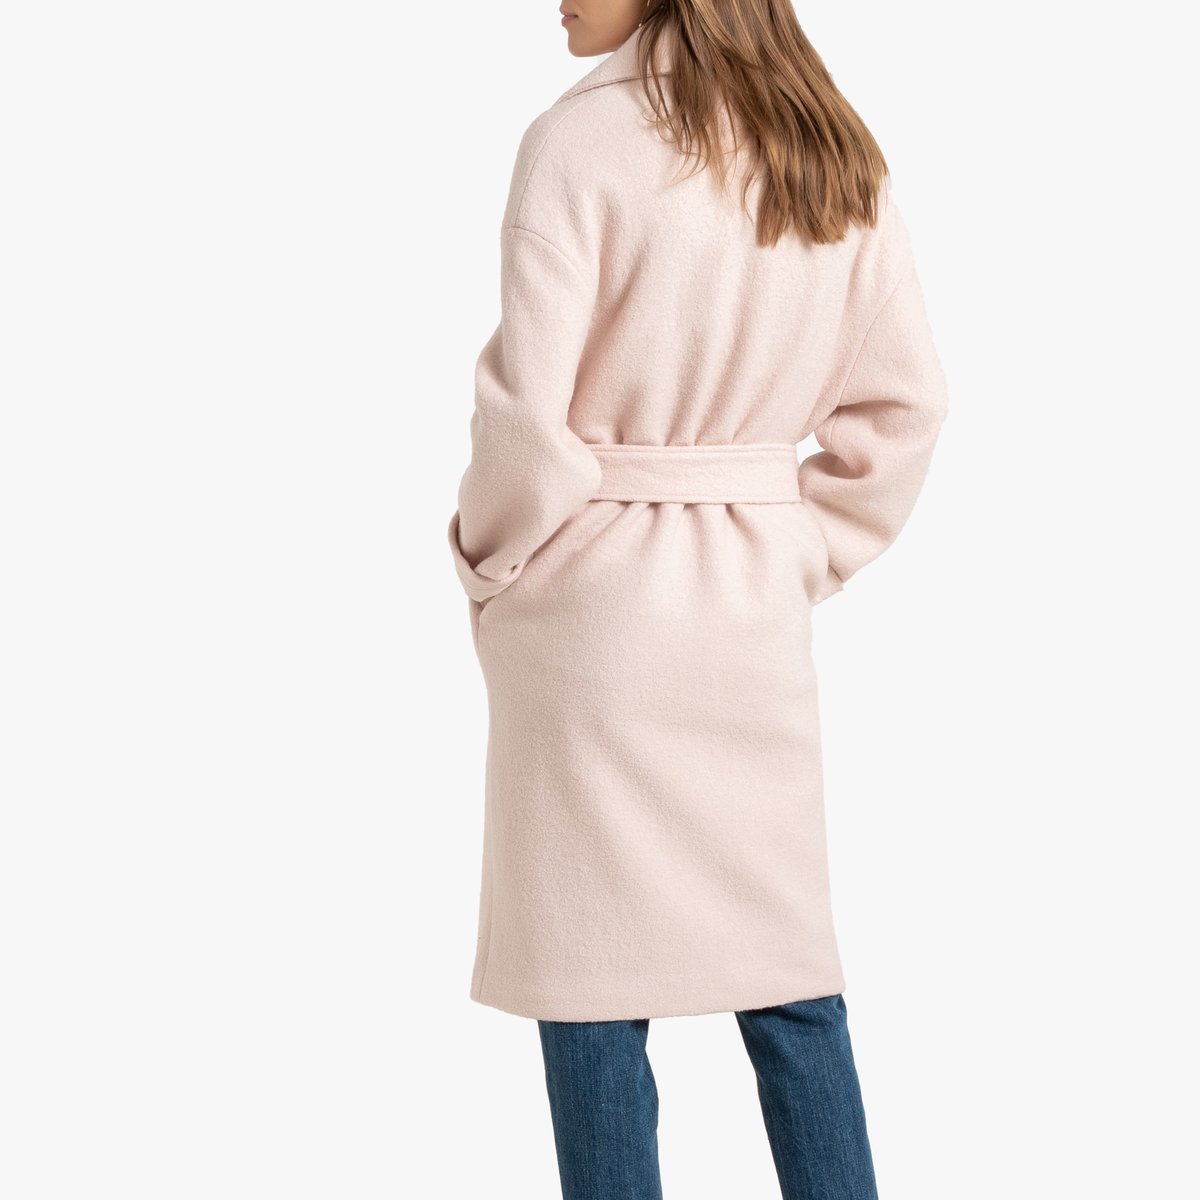 Пальто La Redoute Средней длины 42 (FR) - 48 (RUS) розовый, размер 42 (FR) - 48 (RUS) Средней длины 42 (FR) - 48 (RUS) розовый - фото 4